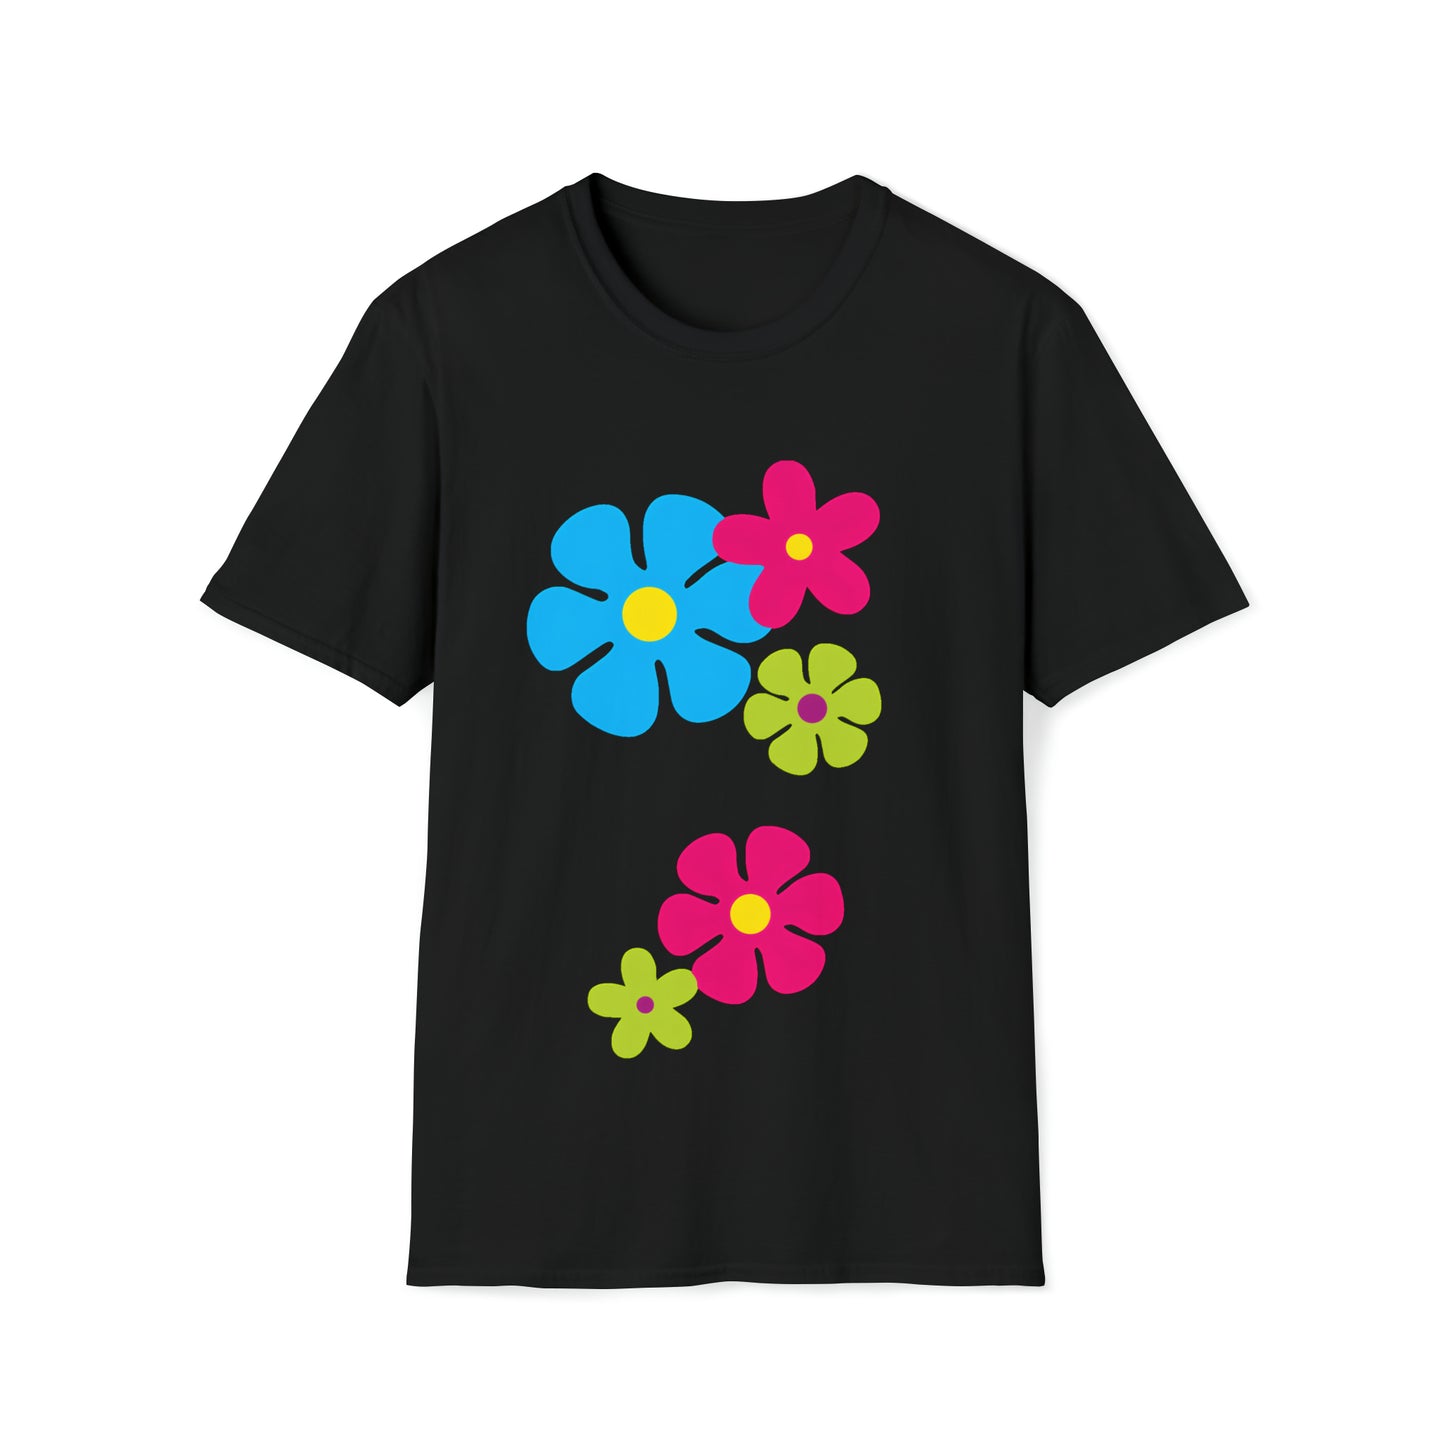 Flower Power tshirt